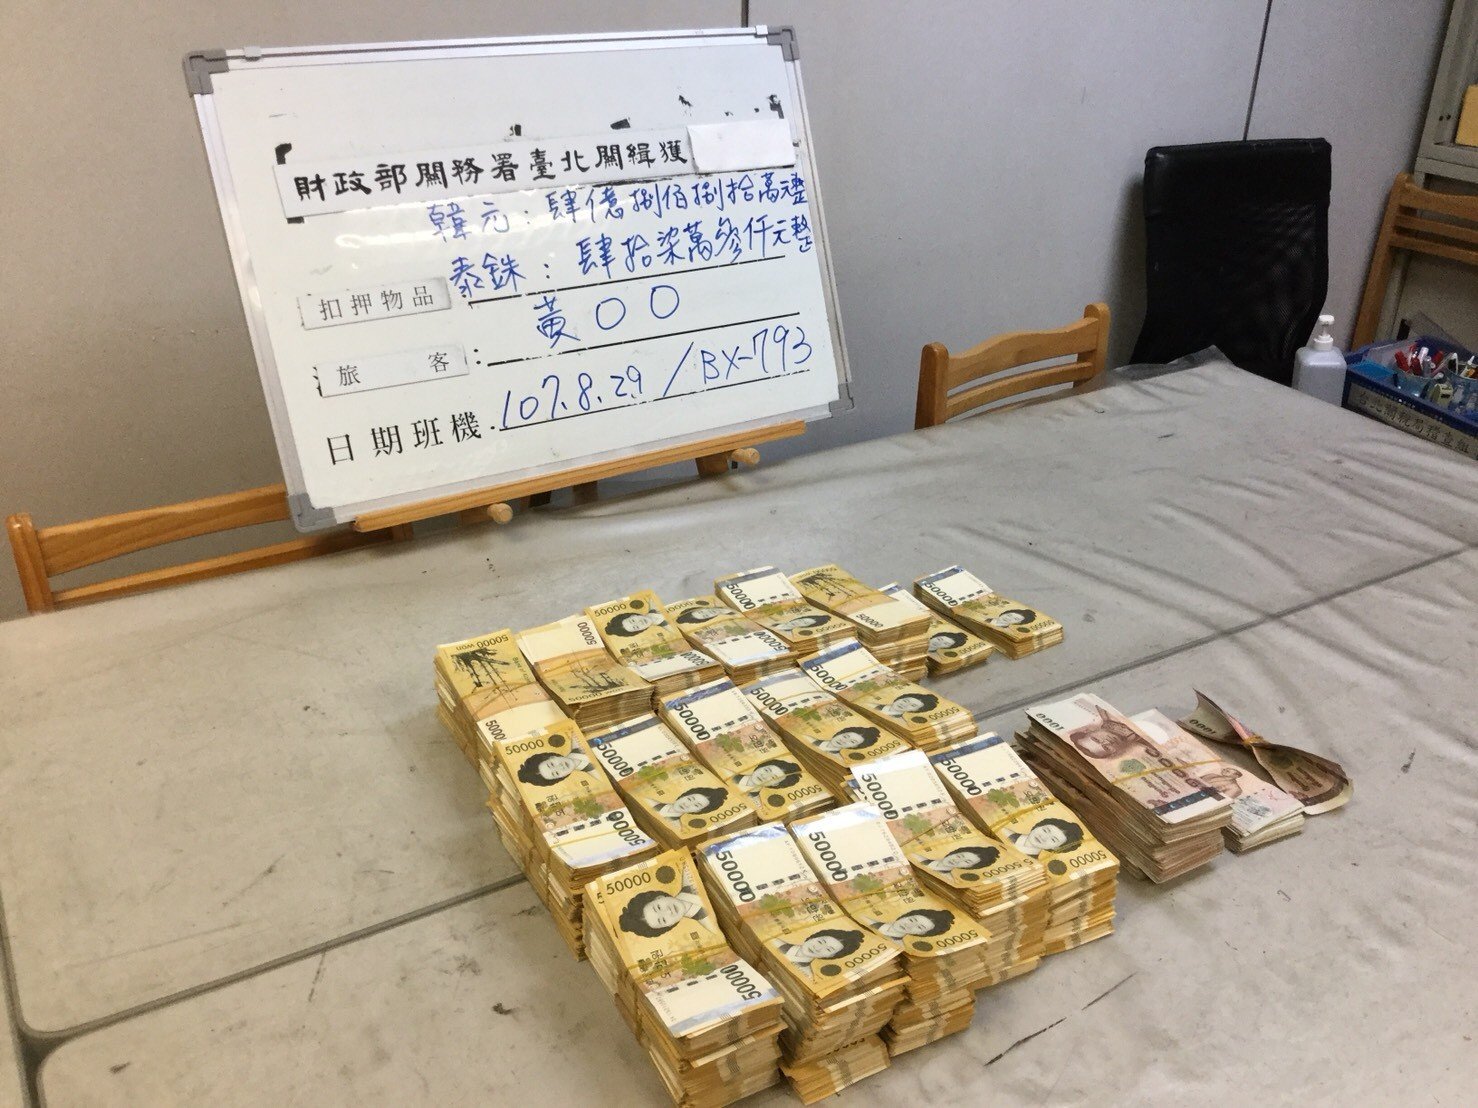 戴子郎返回台湾时，将价值约170万令吉的韩元与泰铢放在随身行李及托运行李，因未申报遭没入国库。